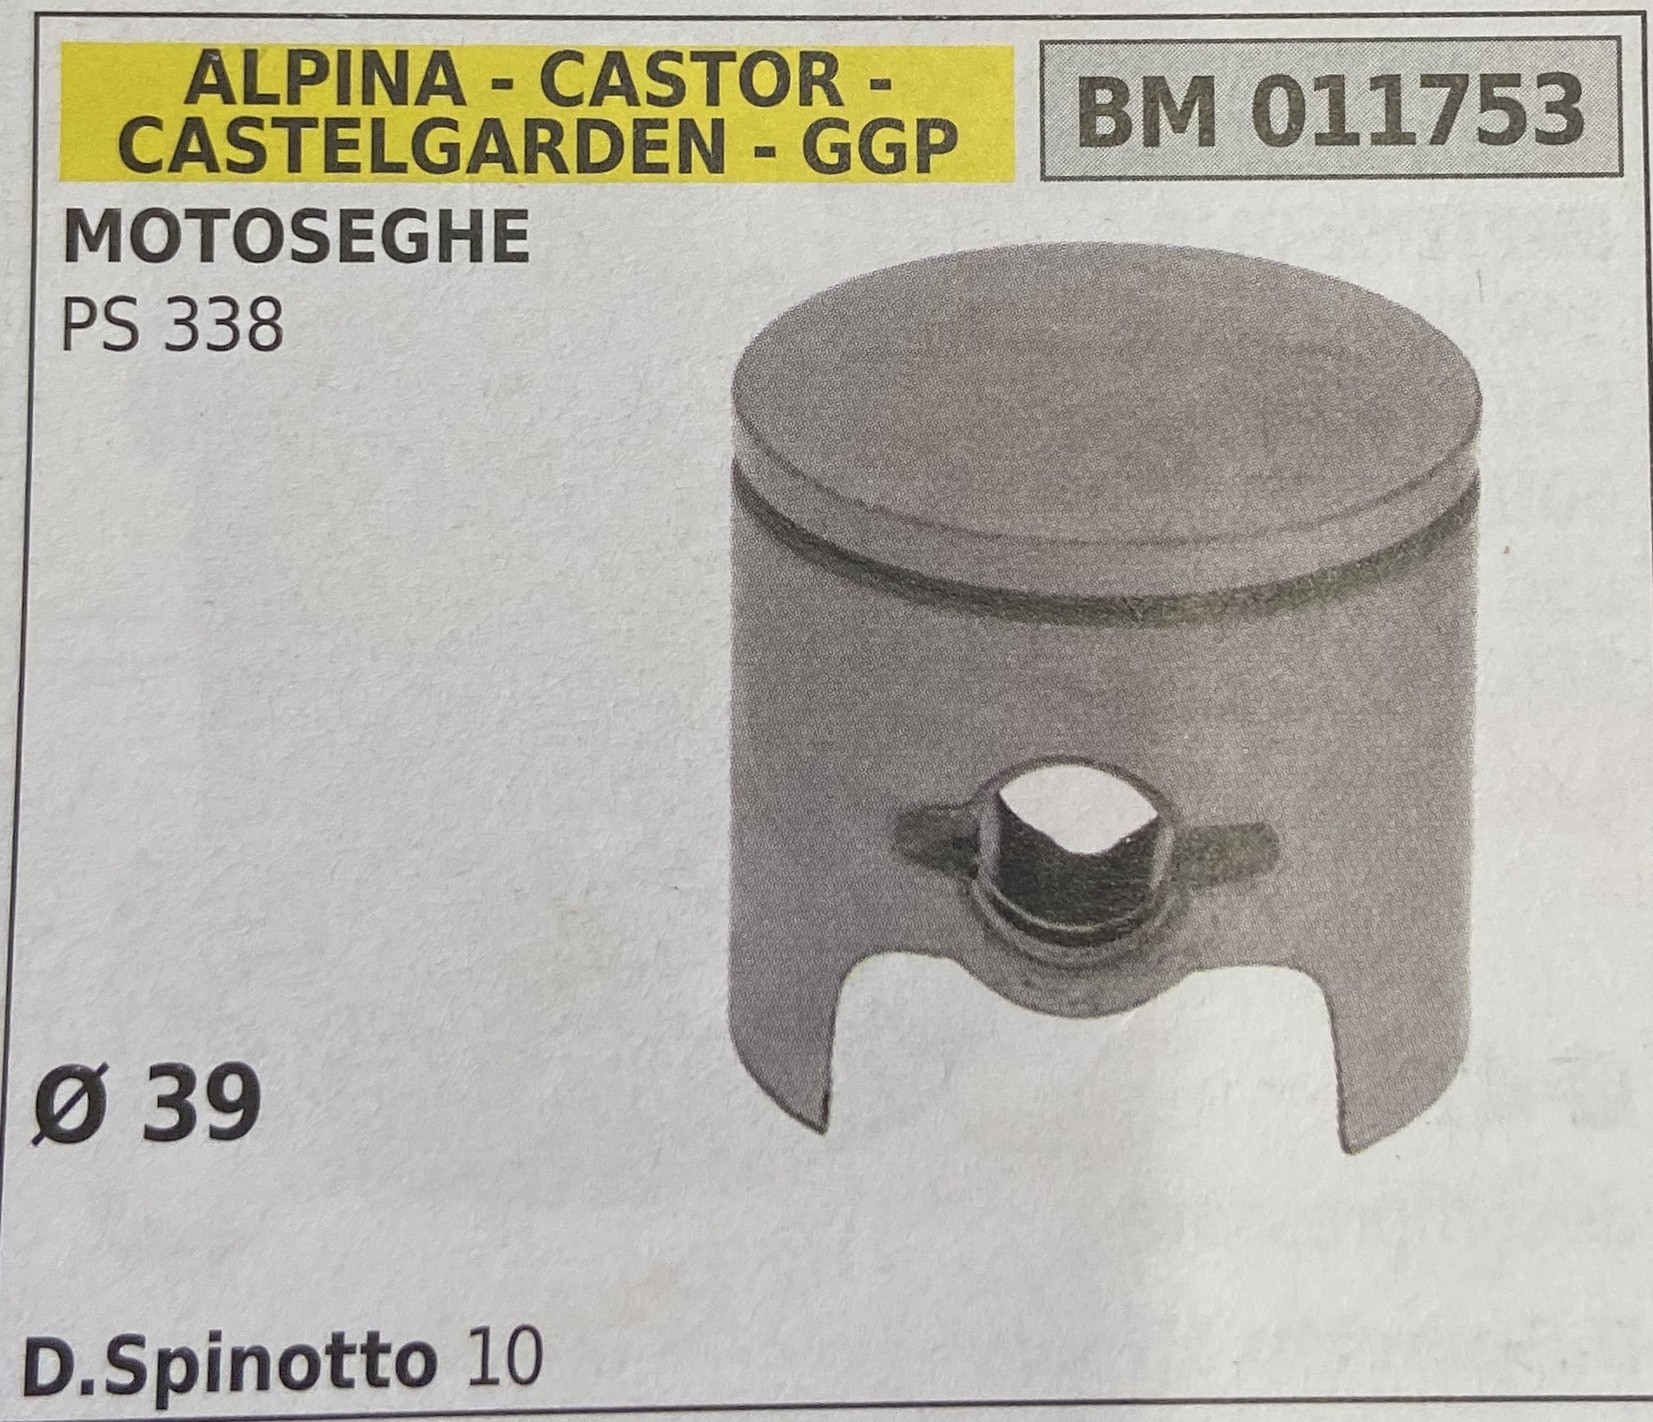 BRUMAR PISTONE COMPLETO ALPINA - CASTOR - CASTELGARDEN - GGP MOTOSEGHE PS 338  Ø 39 D.Spinotto 10  R.O. -